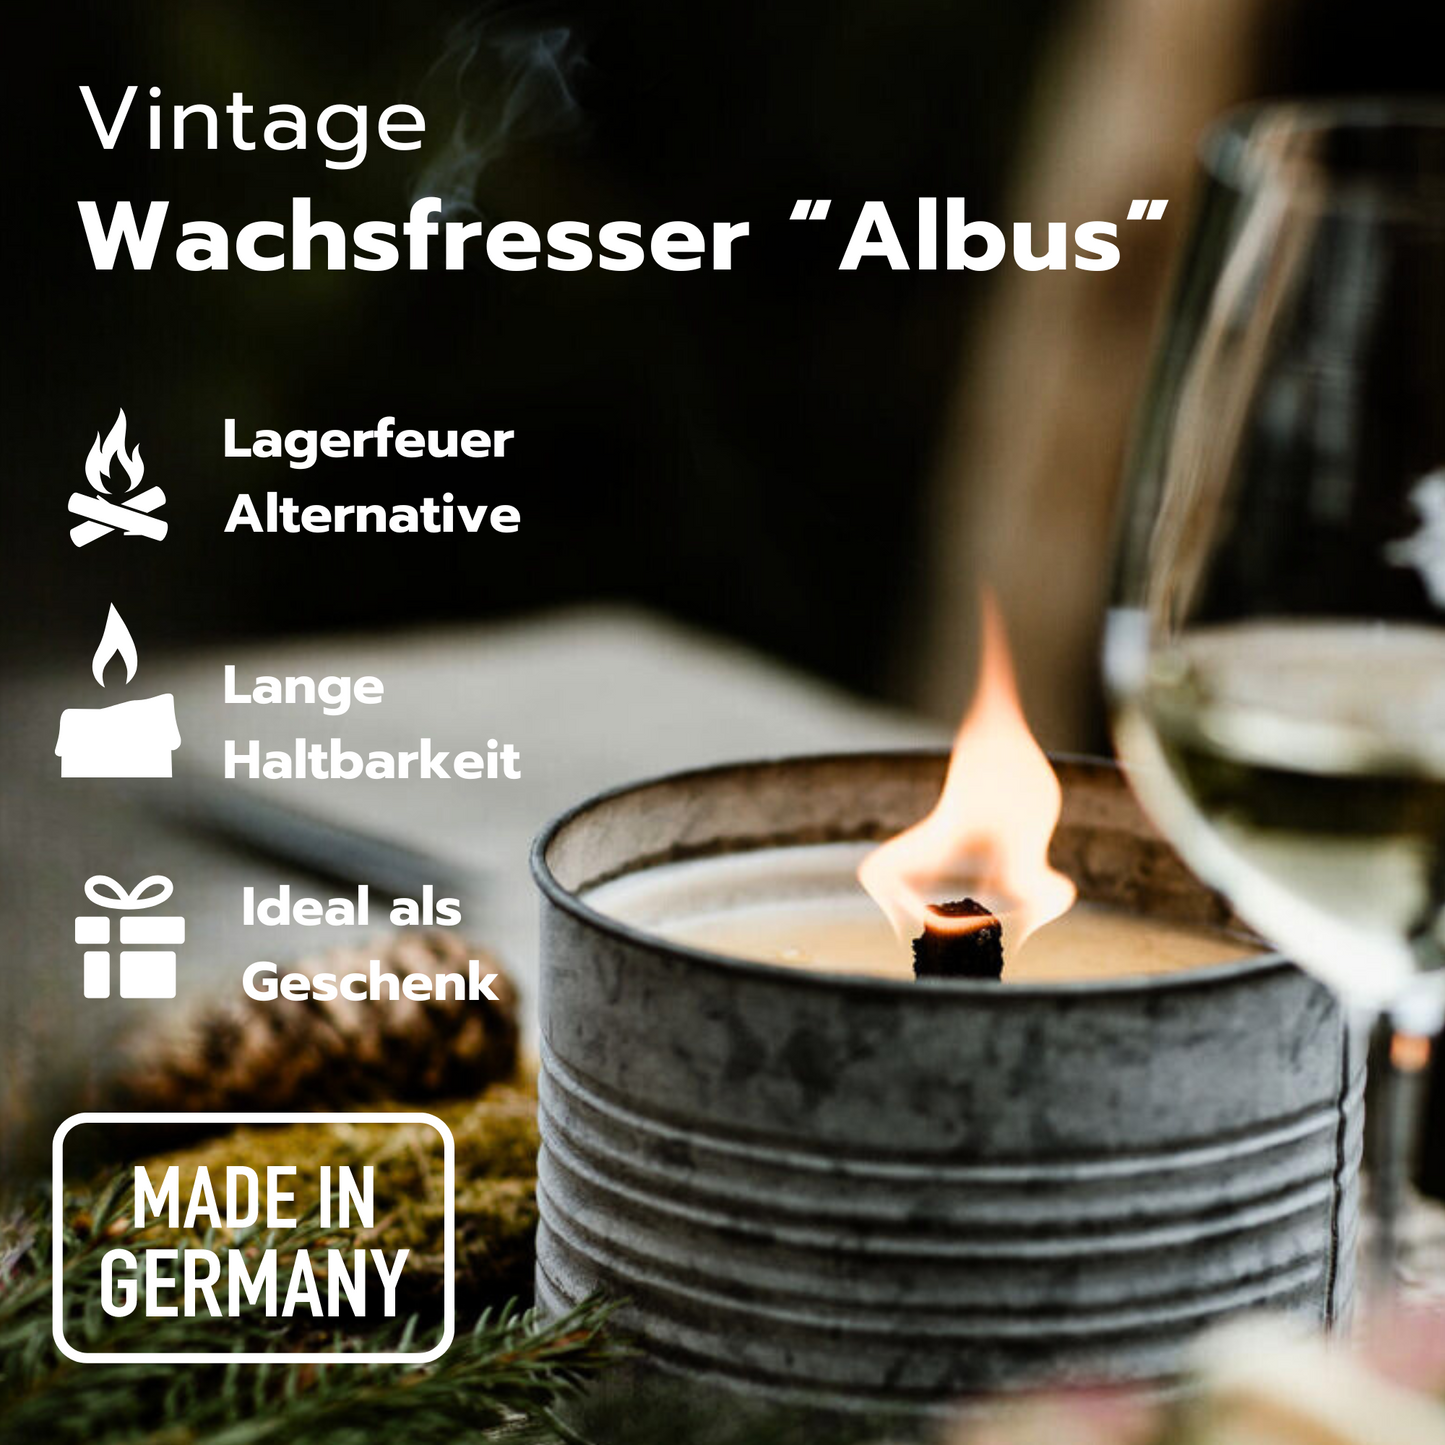 Brockenfeuer "Albus" - Wachsfresser / Wachsfeuer / Outdoorkerze